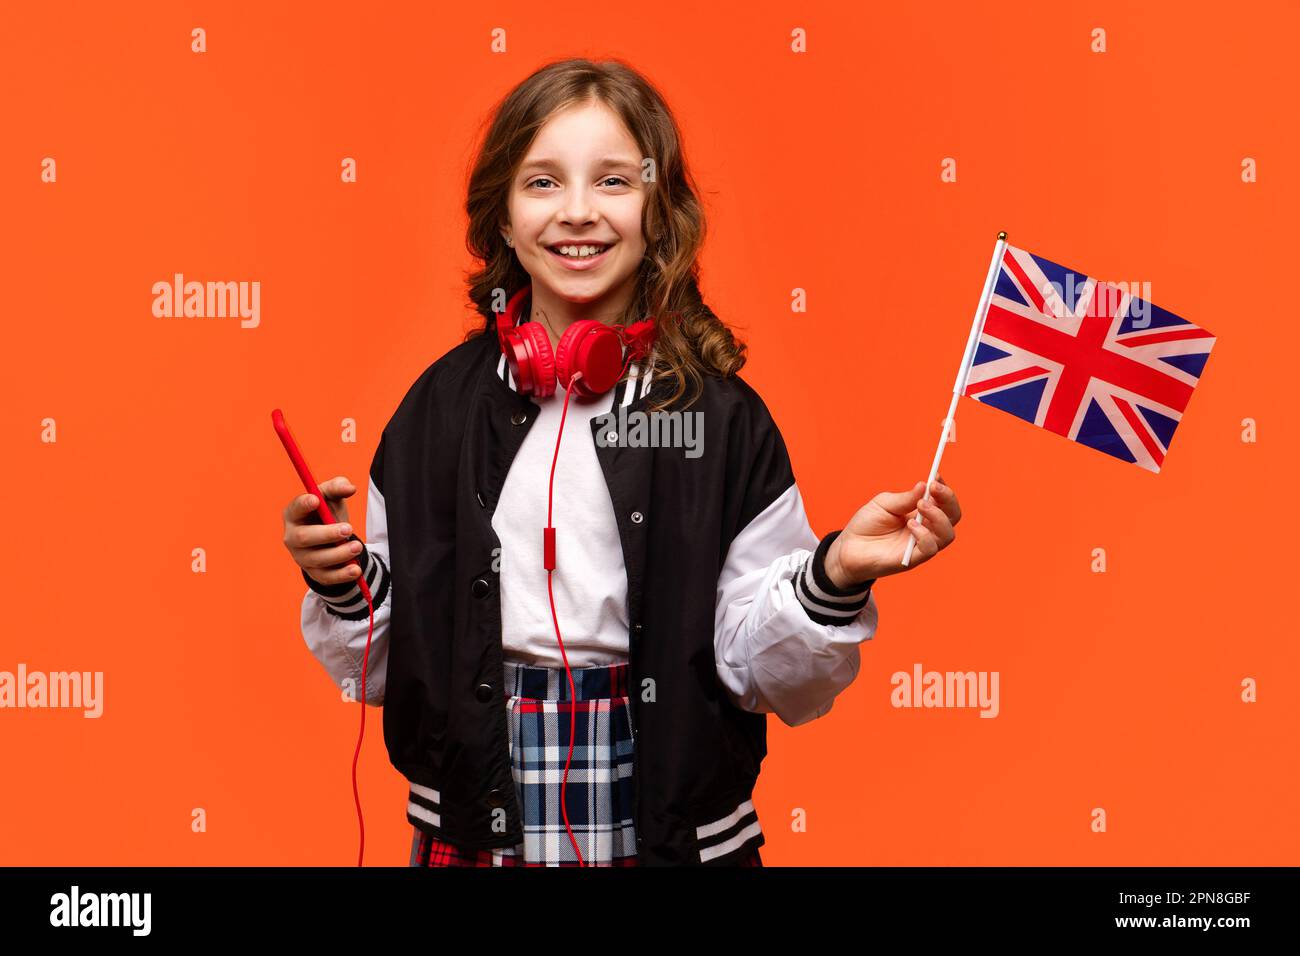 Adolescente en ropa casual y auriculares rojos con teléfono móvil. Chica de  la escuela sostiene la pequeña bandera del Reino Unido. Concepto de estudio  en el extranjero. Aprender inglés británico con nativo